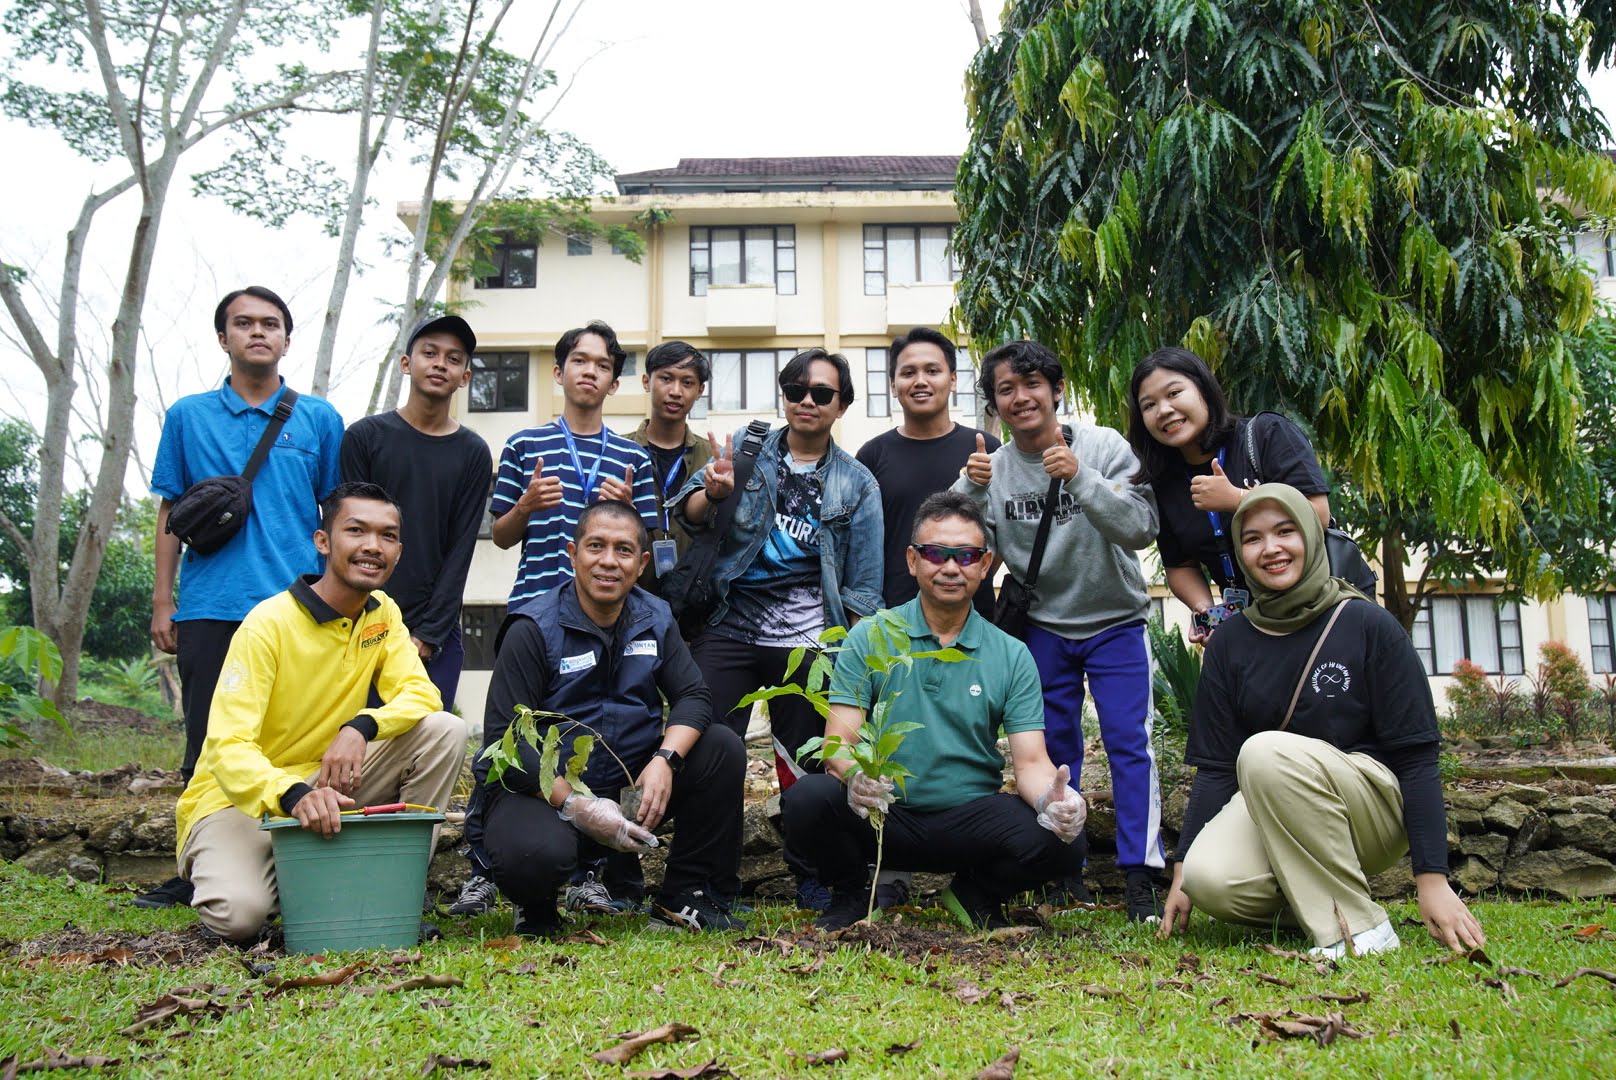 Wali Kota Pontianak, Edi Rusdi Kamtono berfoto bersama para mahasiswa usai menanam pohon dalam rangka memperingati Hari Air Sedunia. (Foto: Prokopim For KalbarOnline.com)